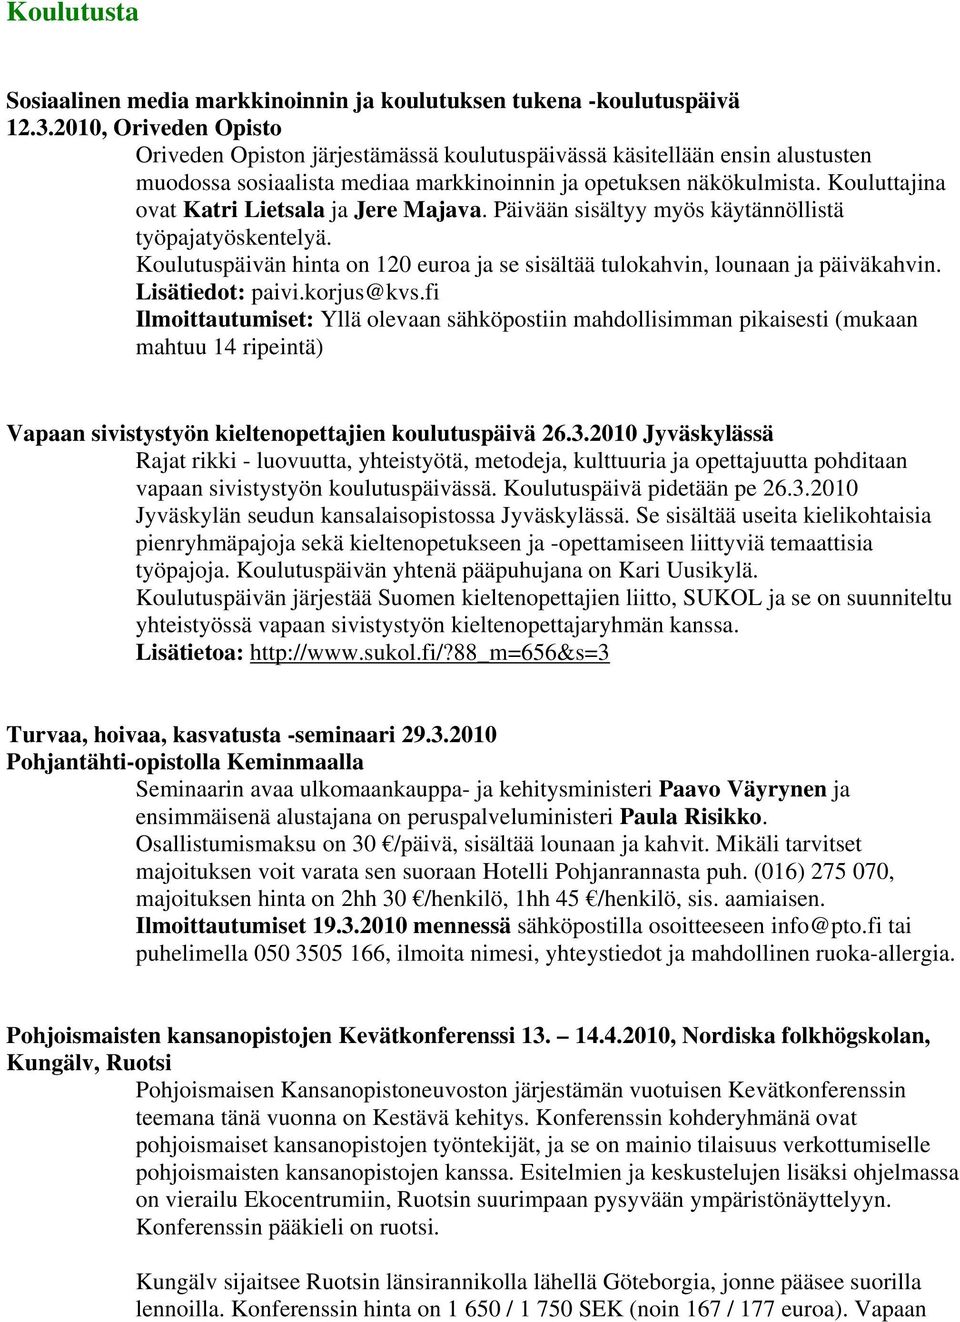 Kouluttajina ovat Katri Lietsala ja Jere Majava. Päivään sisältyy myös käytännöllistä työpajatyöskentelyä. Koulutuspäivän hinta on 120 euroa ja se sisältää tulokahvin, lounaan ja päiväkahvin.